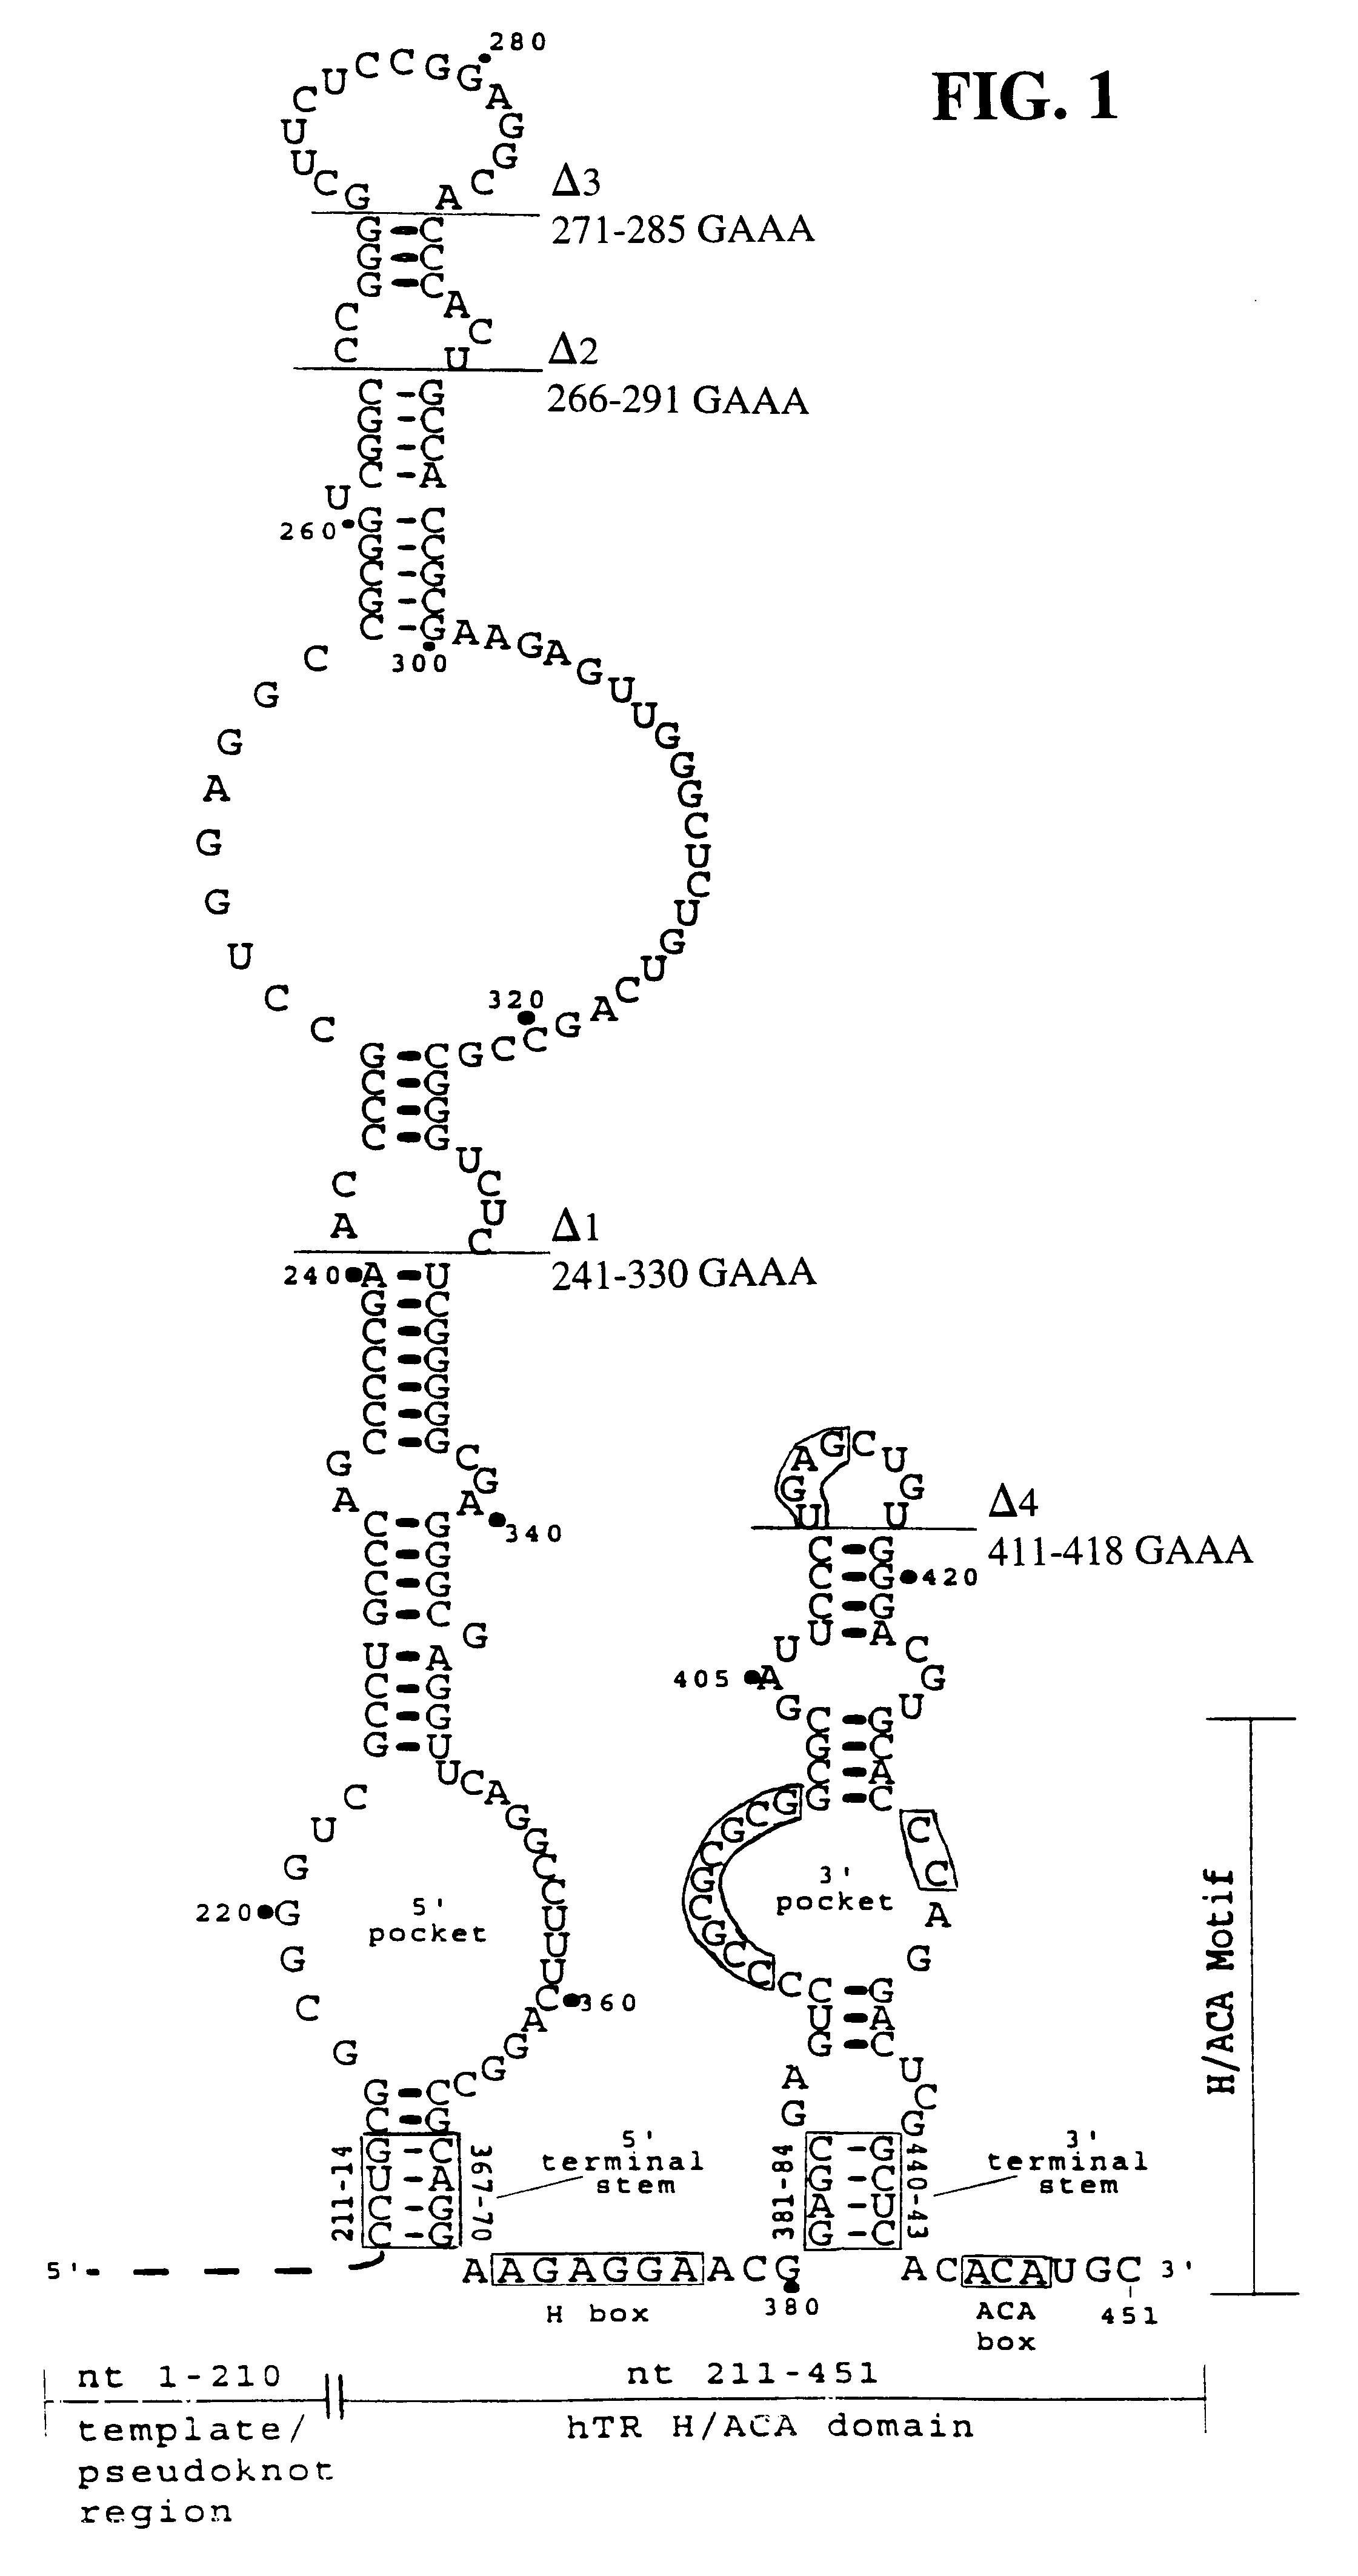 Human telomerase RNA elements